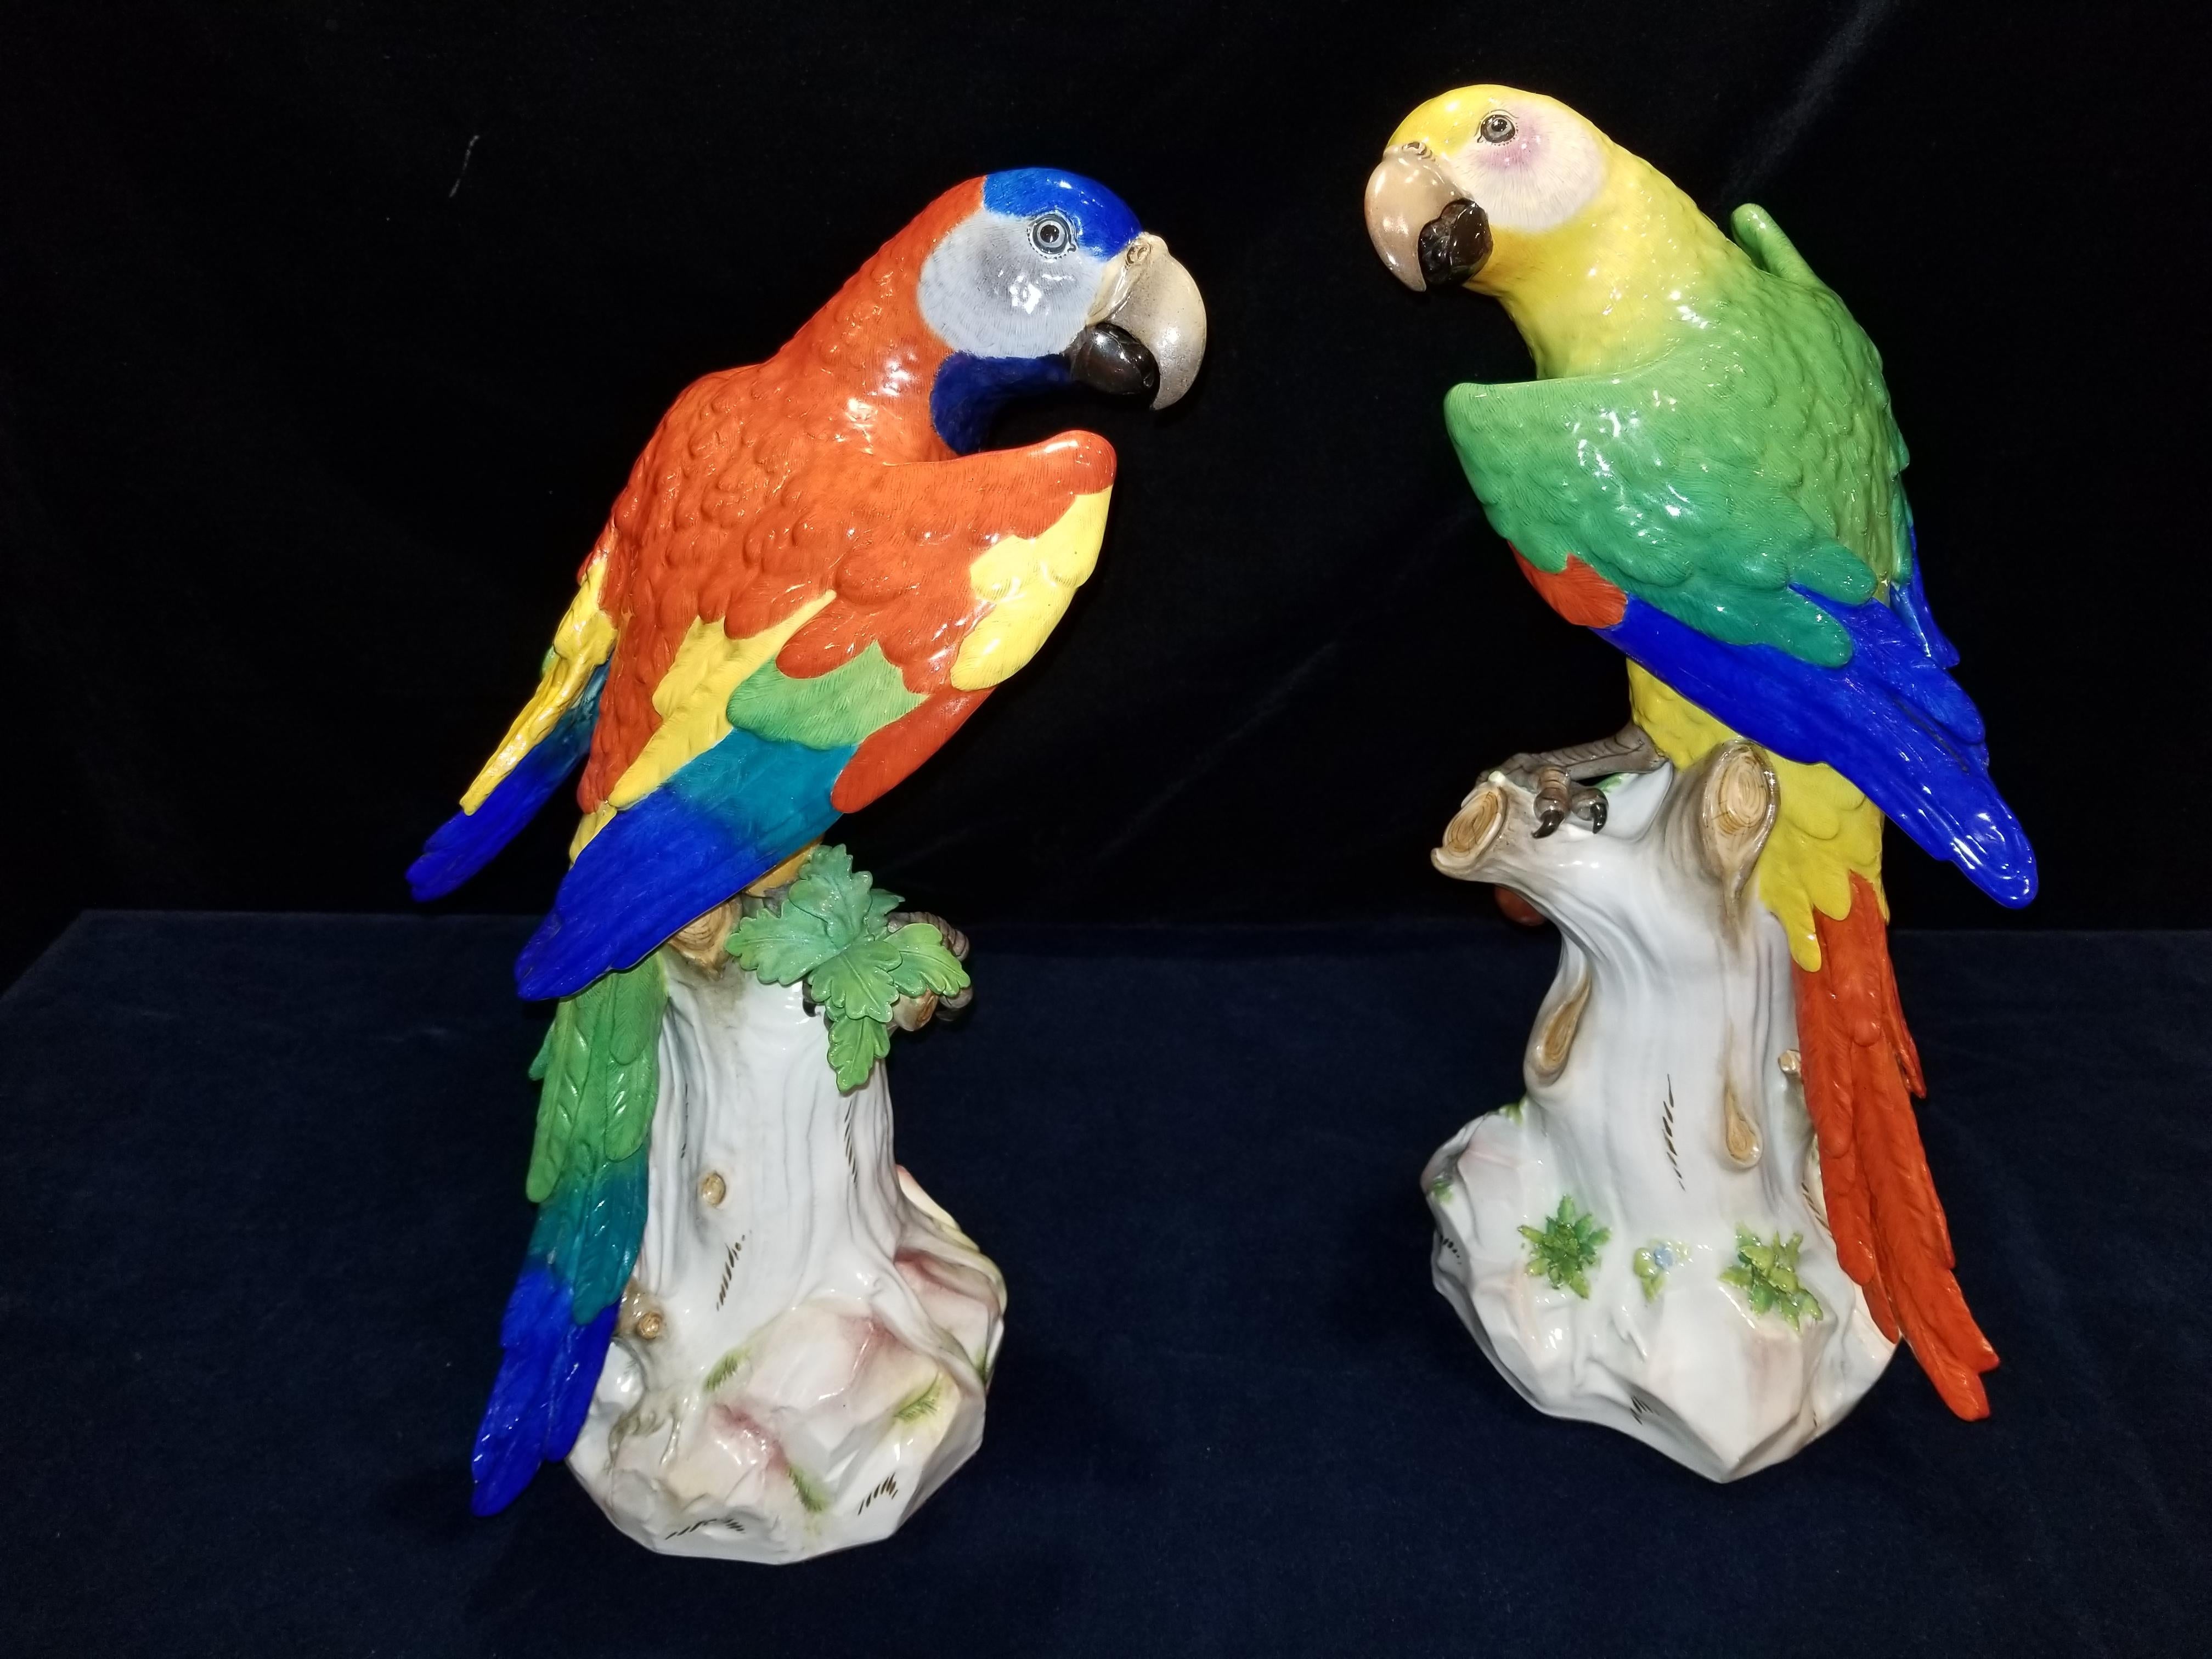 Magnifique et grande paire de figurines anciennes en porcelaine de Meissen représentant des perroquets colorés, chacun se tenant sur une branche d'arbre avec des cerises et un beau feuillage, d'après un modèle de J. J. Kandler. Les deux perroquets